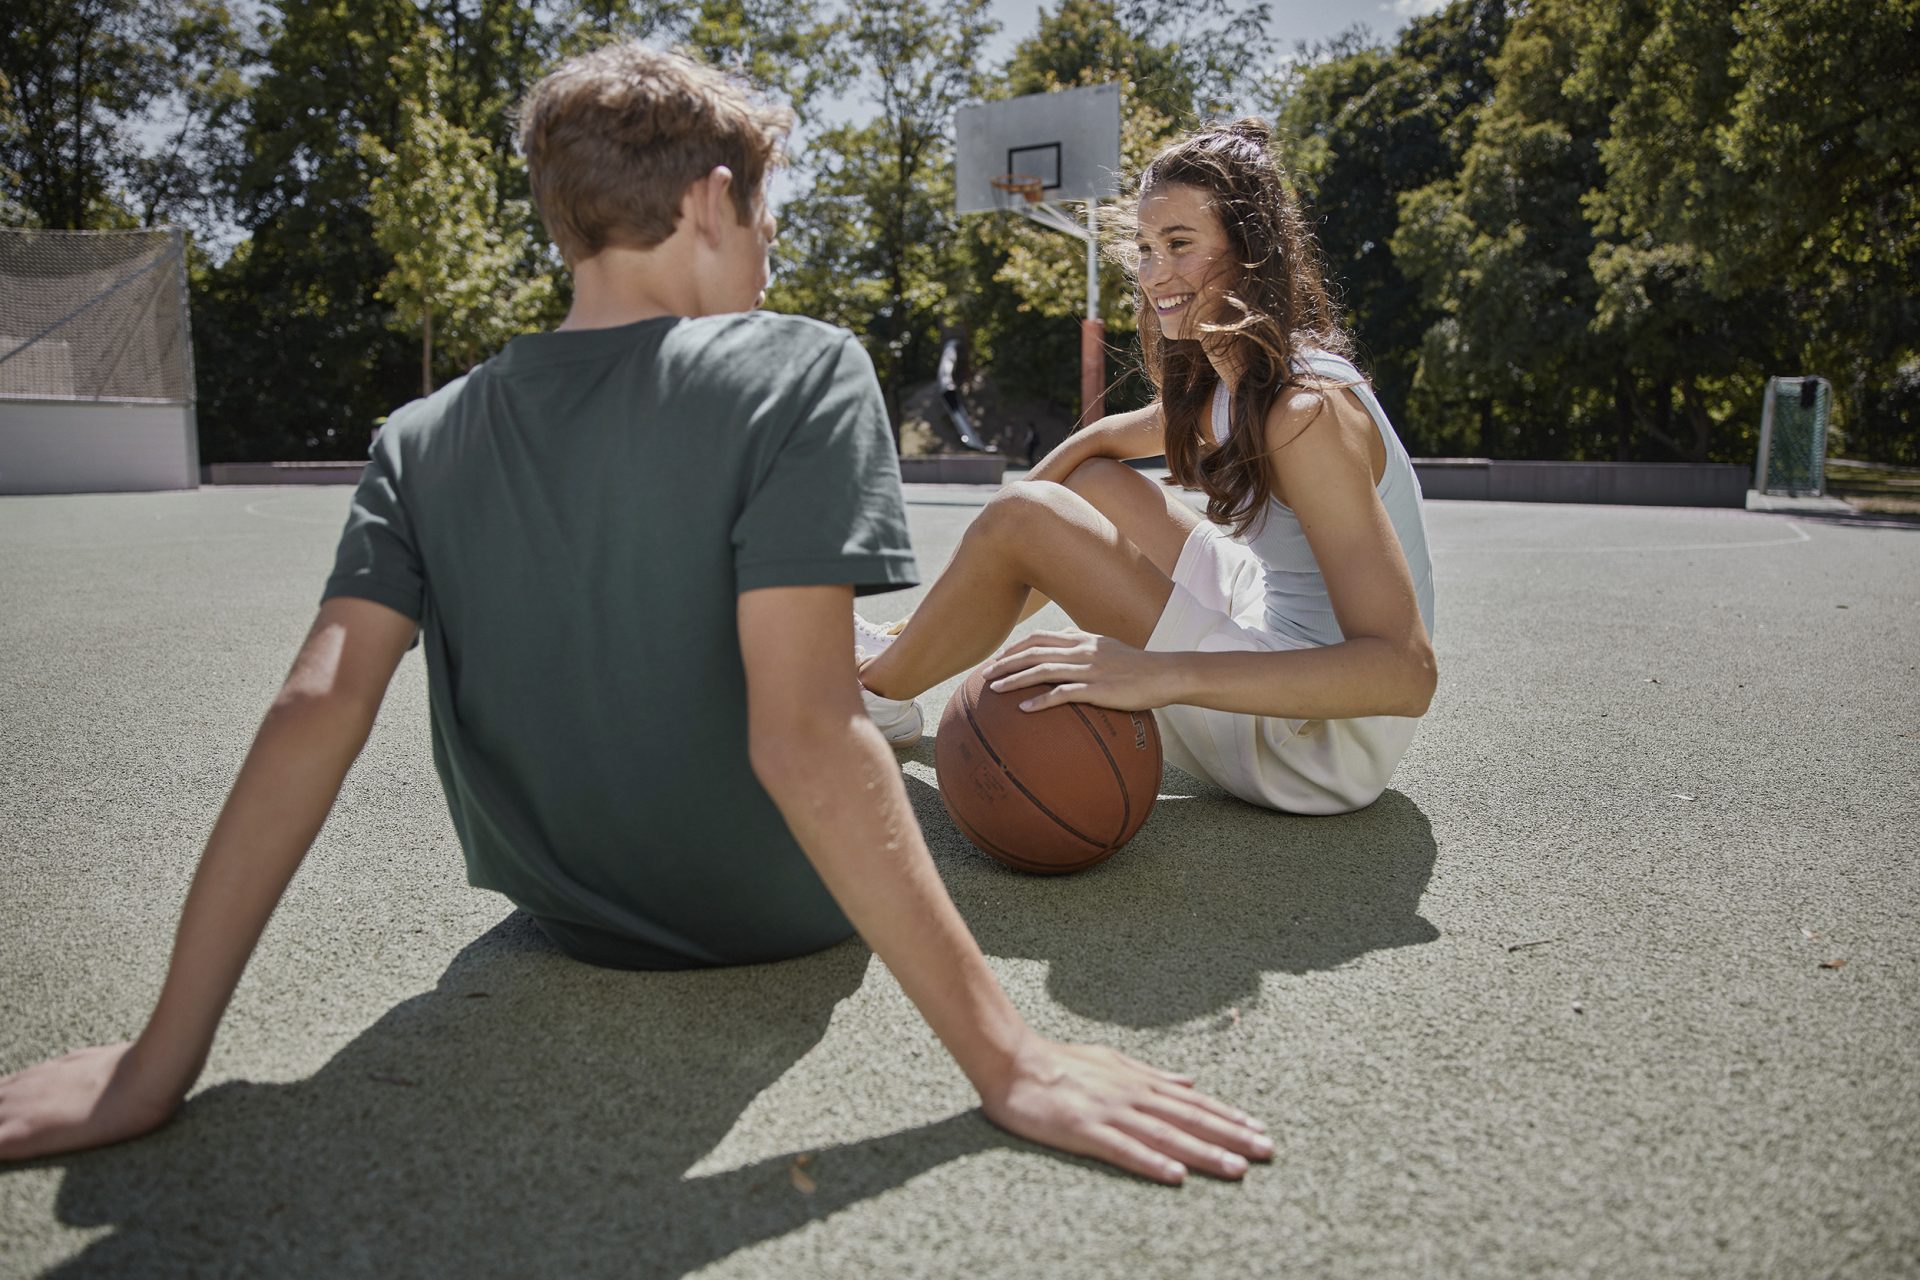 Junge und Mädchen mit Basketball